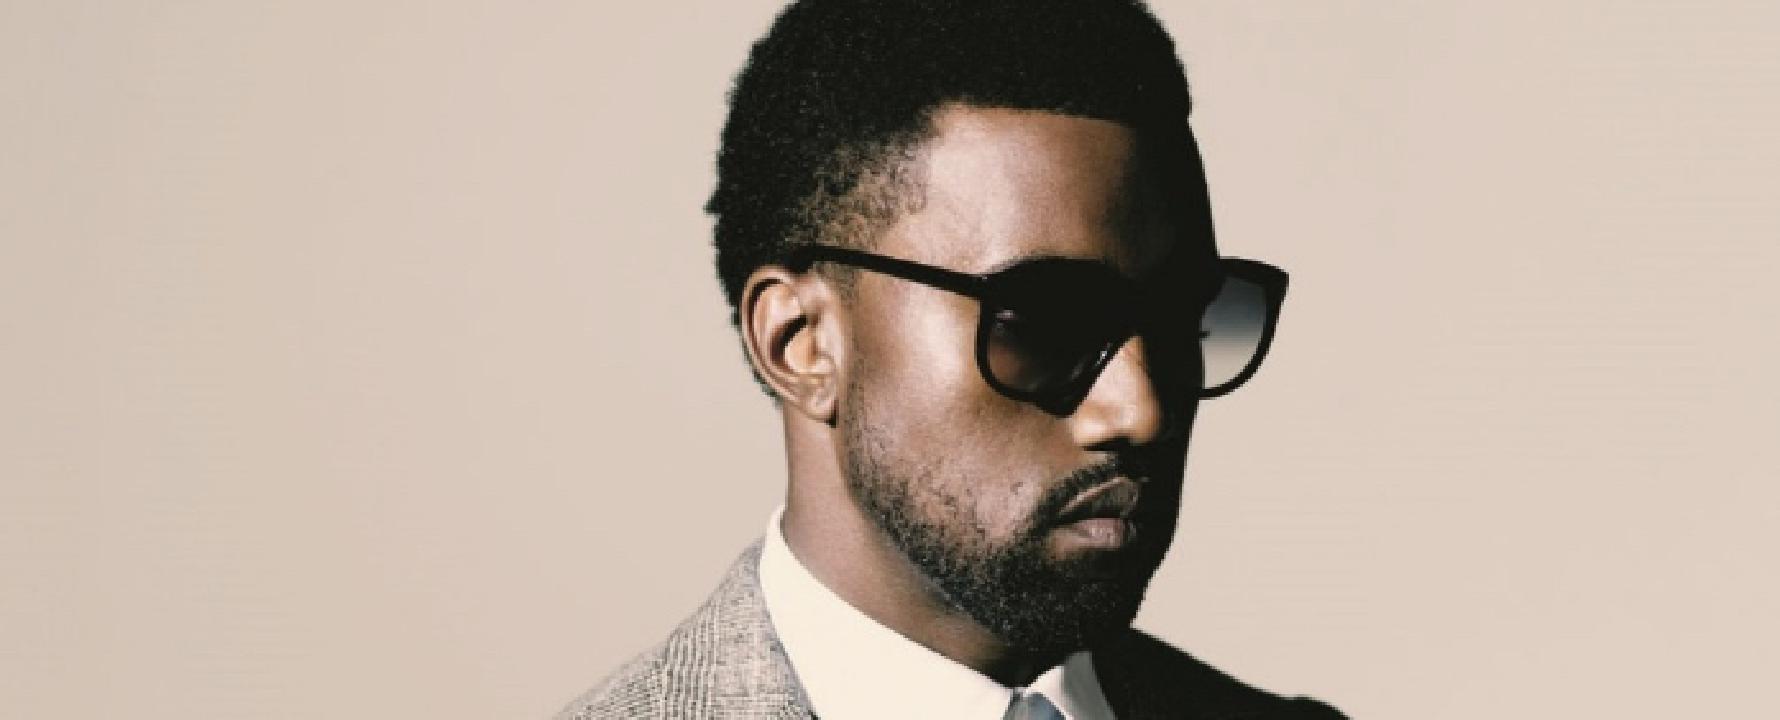 Photographie promotionnelle de Kanye West.